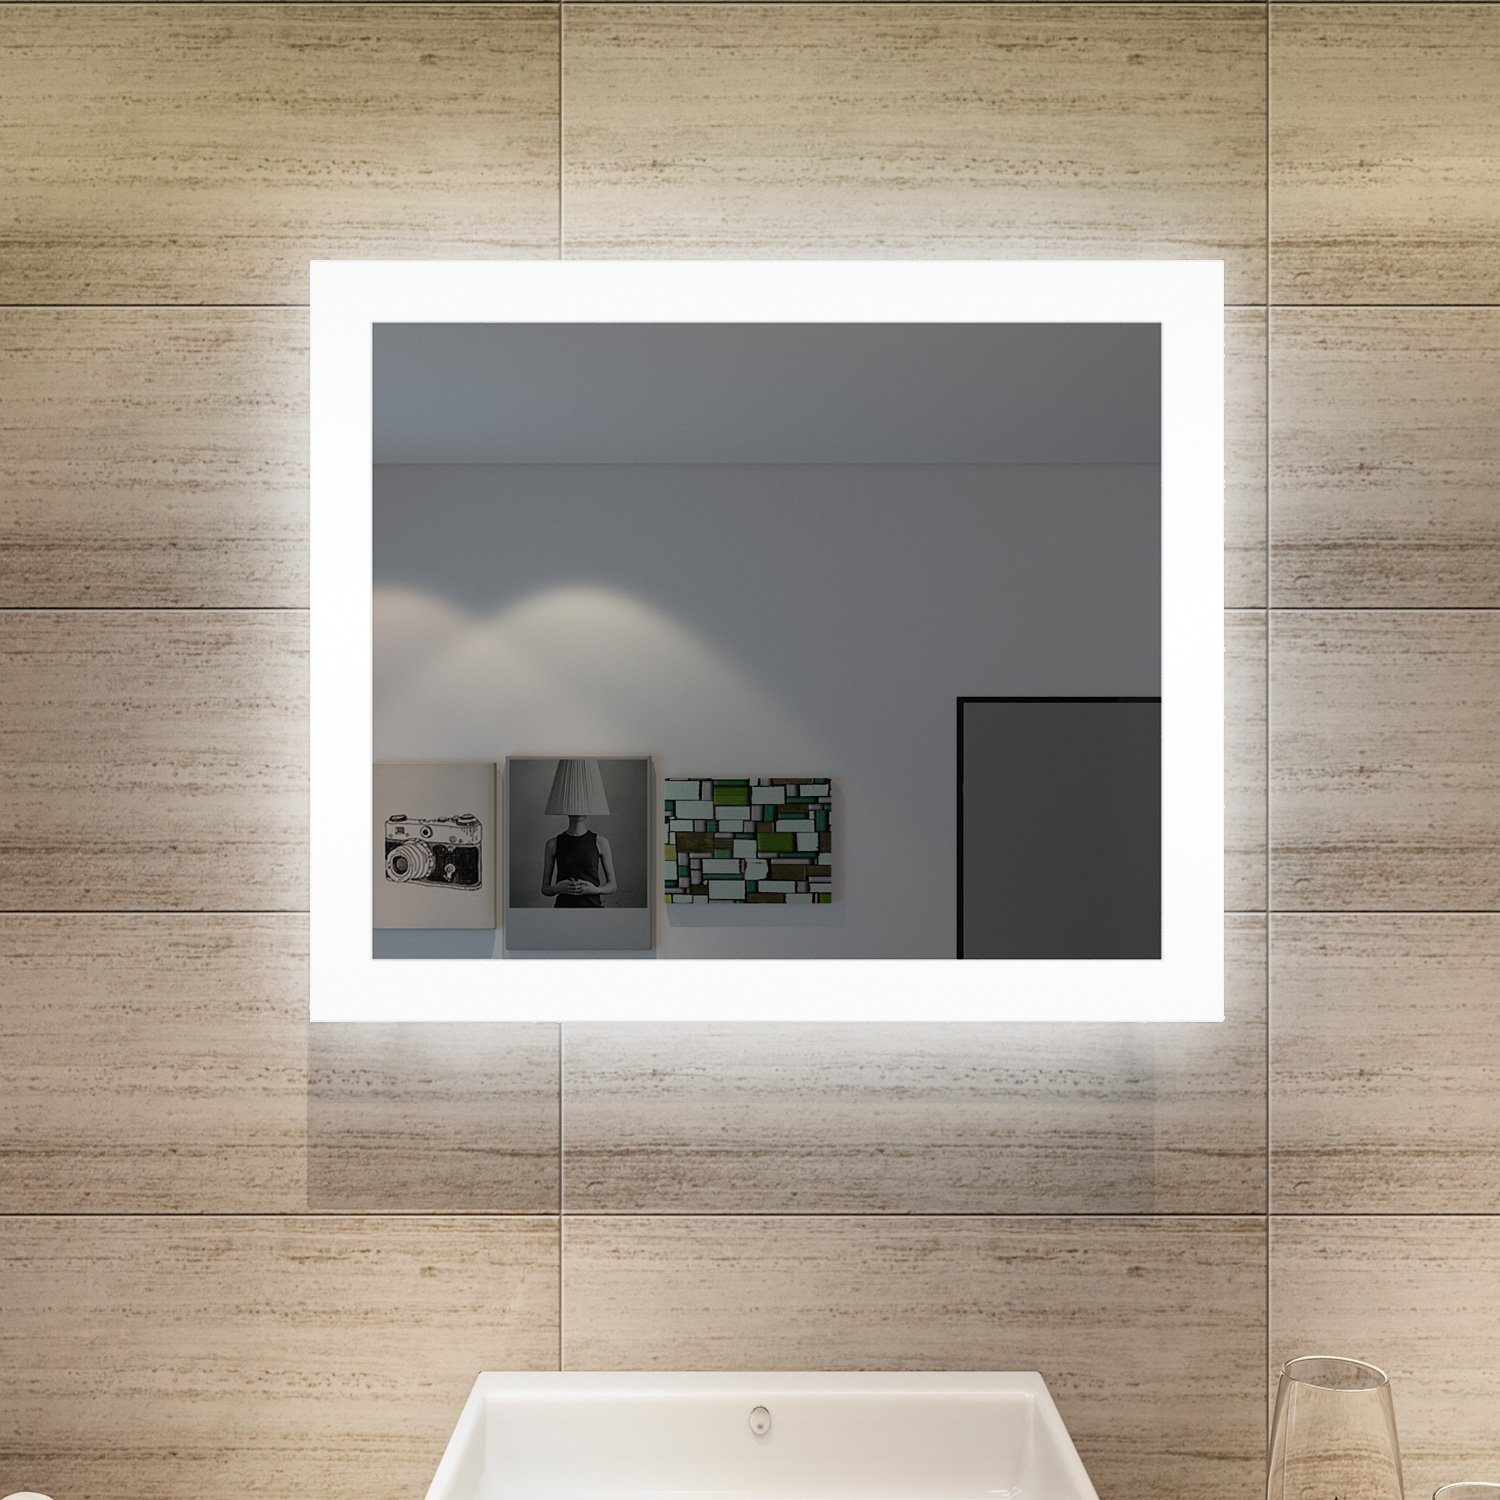 Kaltweiß Badspiegel mit energiesparender IP44,Wandspiegel LED Beleuchtung Badezimmerspiegel,Wandschalter,kaltweiß,IP44, SONNI Lichtspiegel